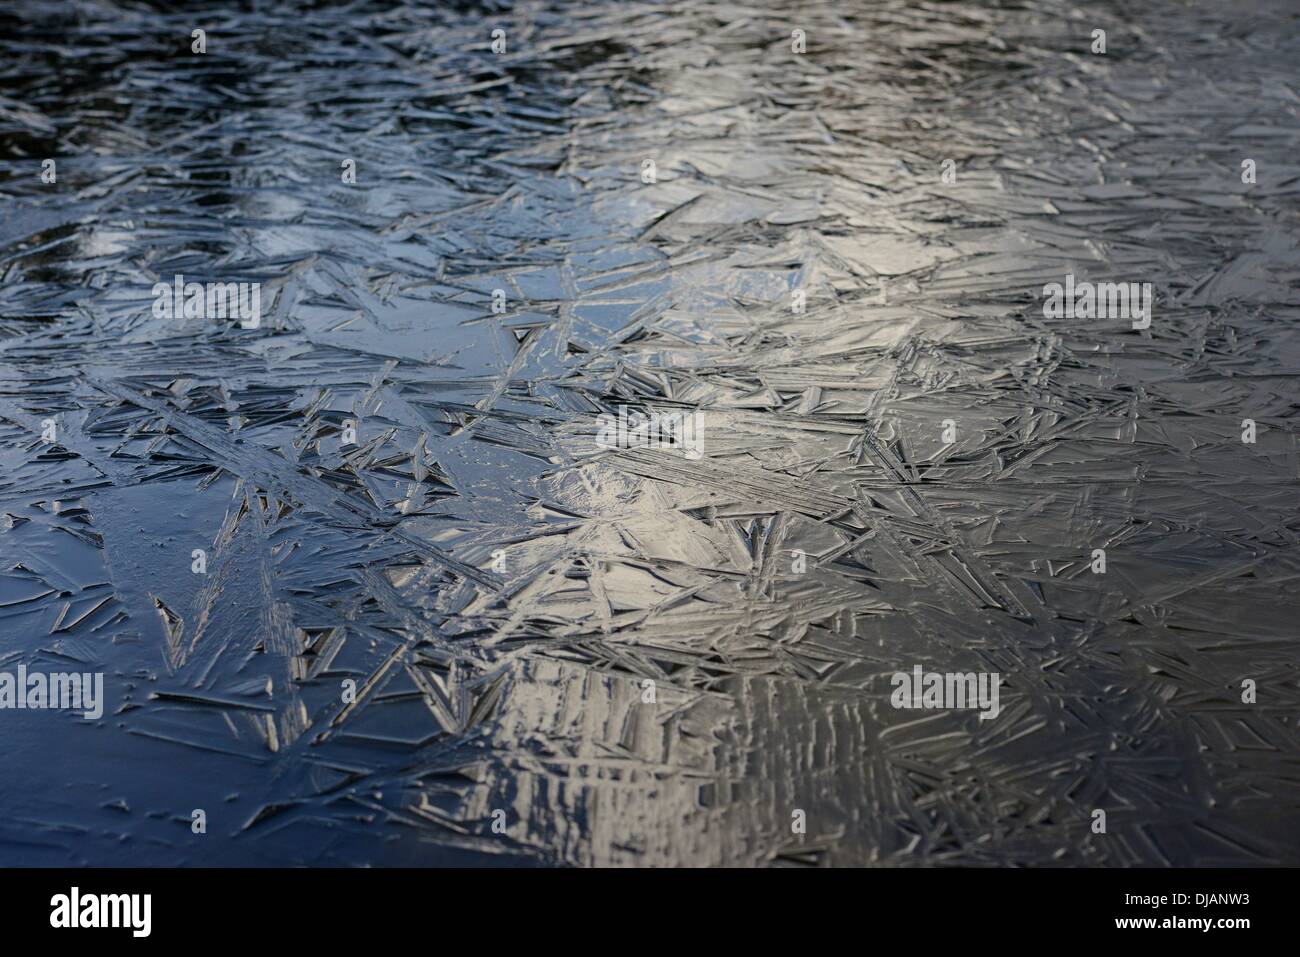 Eis auf einem See Smll. Bild aufgenommen am 25. November 2013. Foto: Frank Mai Stockfoto